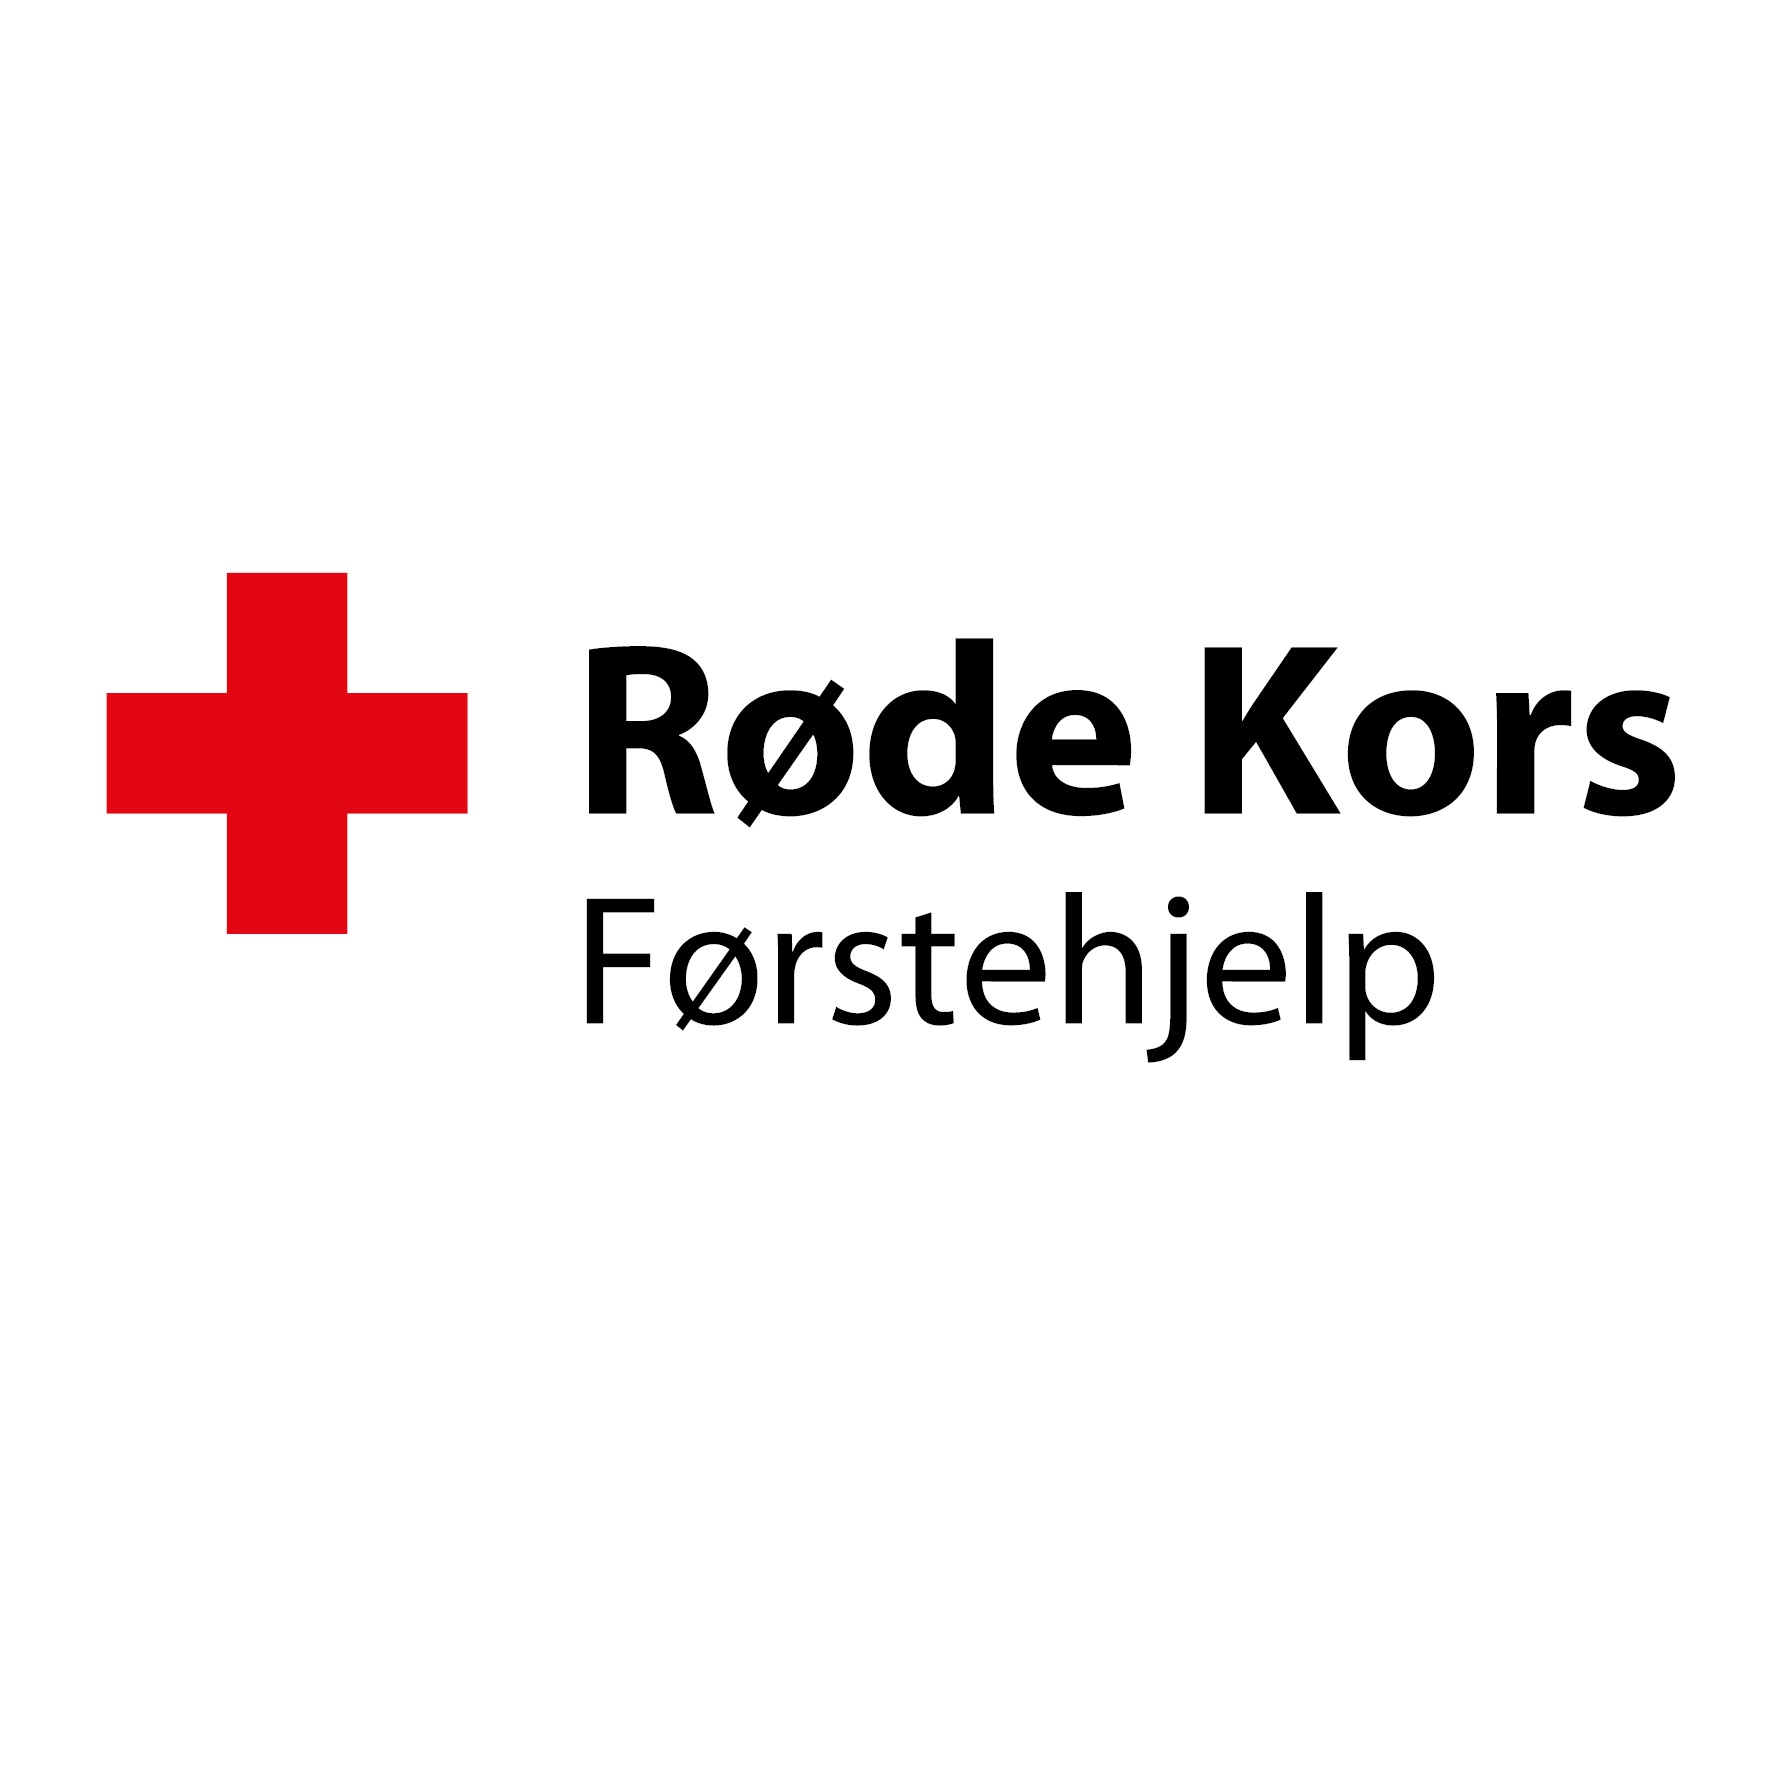 Røde Kors Førstehjelp's photo